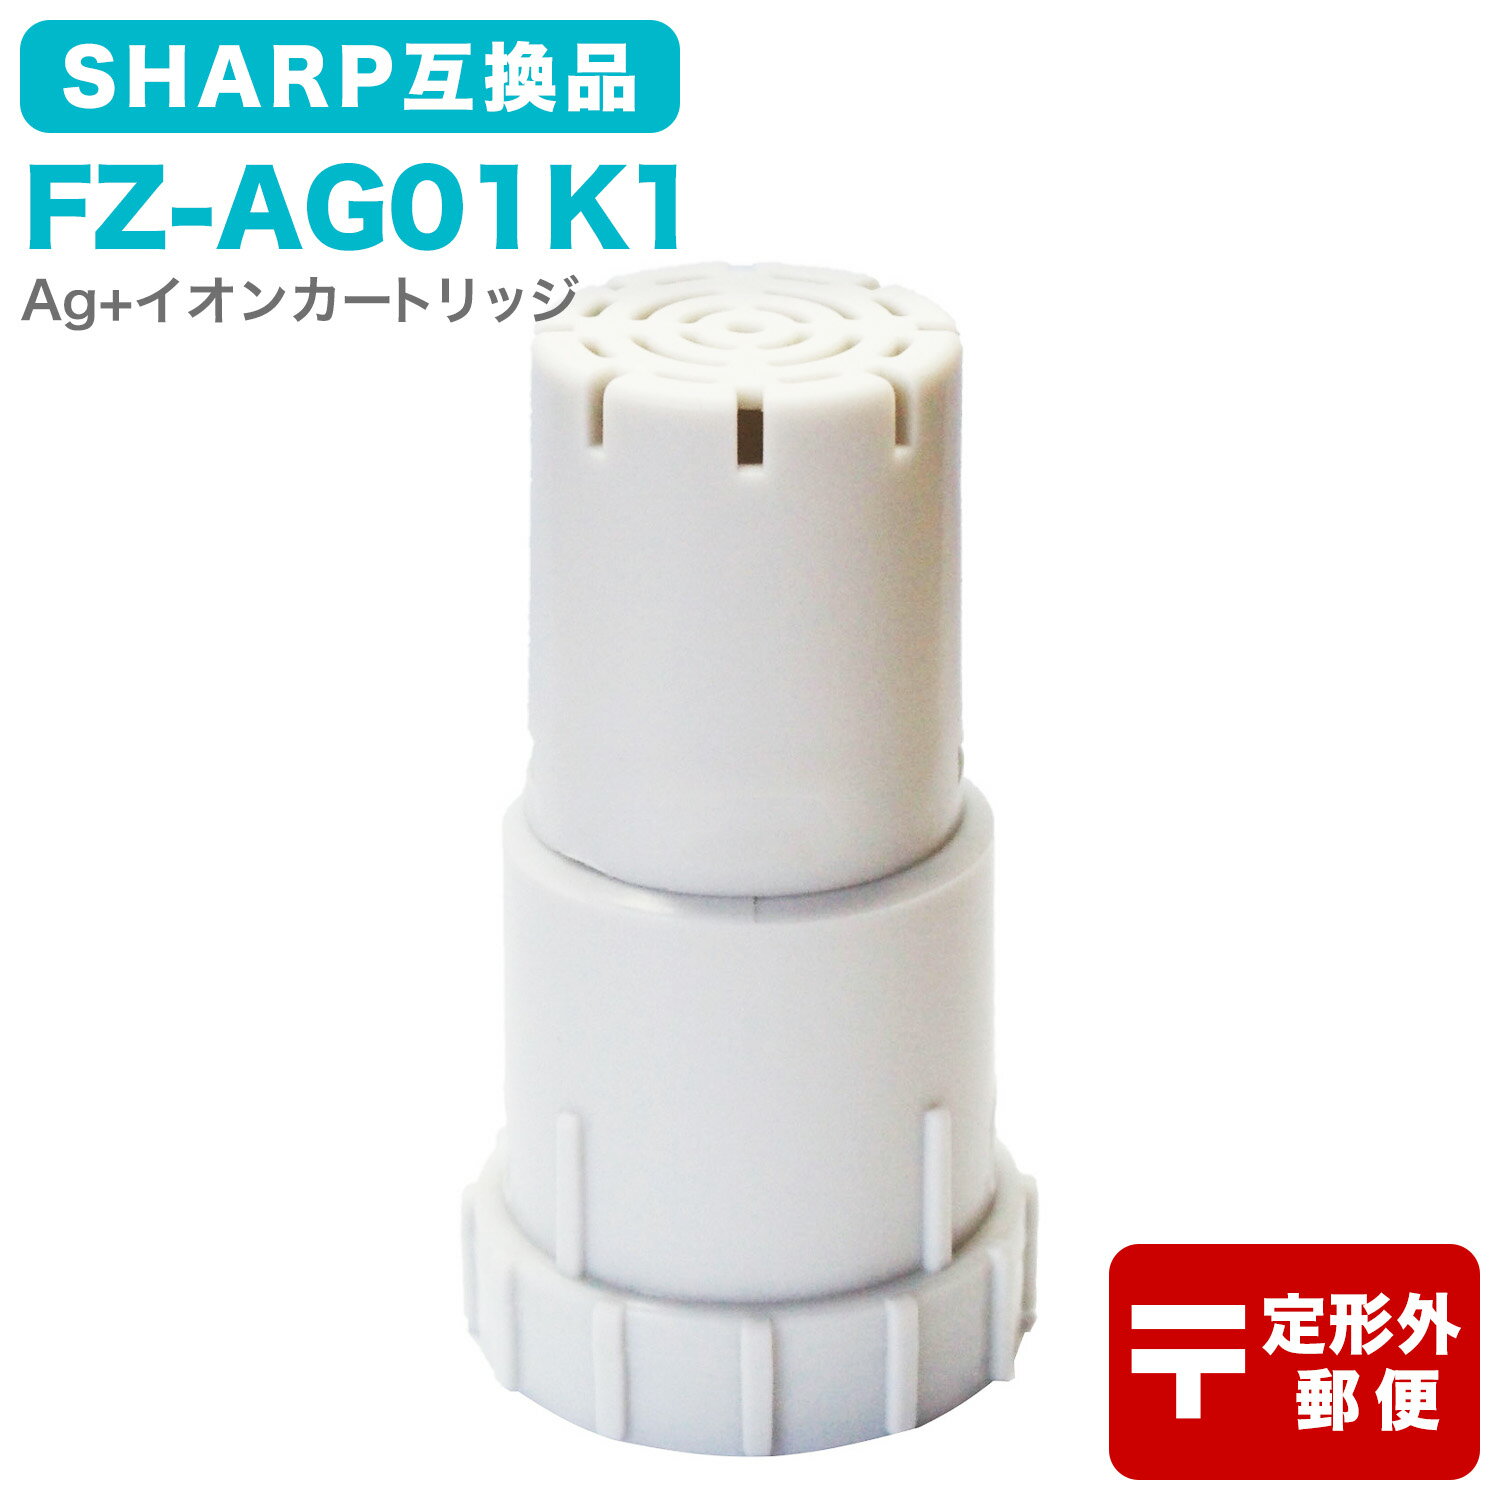 FZ-AG01K1 Ag+イオンカートリッジ FZ-AG01K2 シャープ加湿空気清浄機/加湿器 交換用 ag イオンカートリッジ fz-ago1k1 （互換品/1個入り） SHARP 互換 抗菌率99.9% 定形外郵便